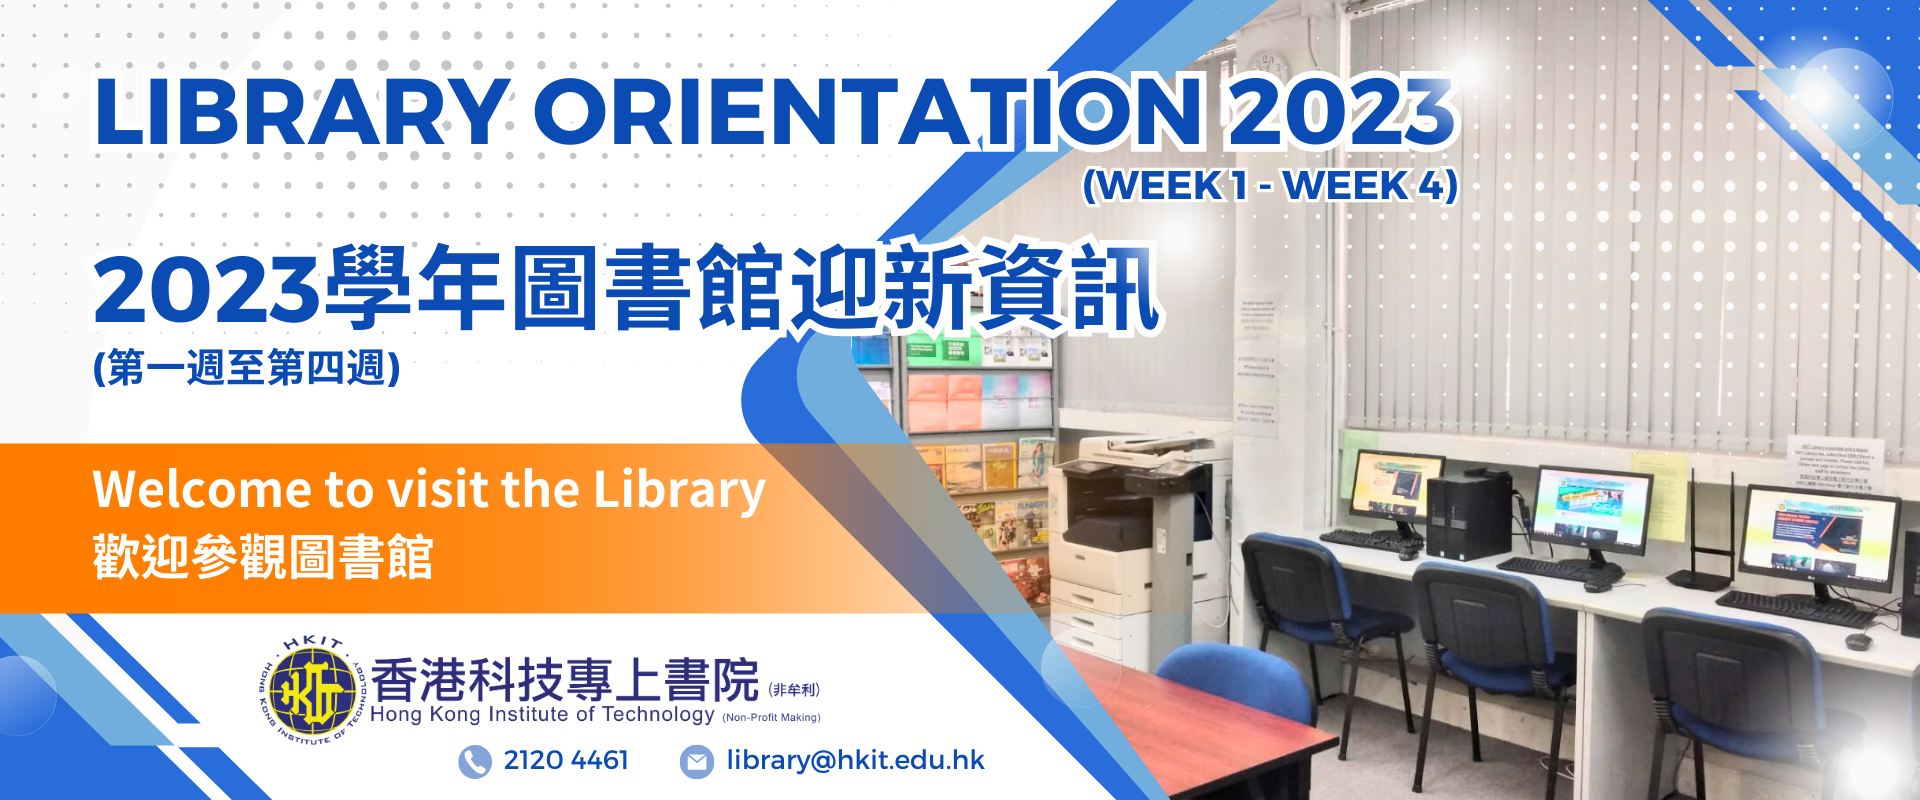 2023學年圖書館迎新/資訊(第一週至第四週) 歡迎參觀圖書館